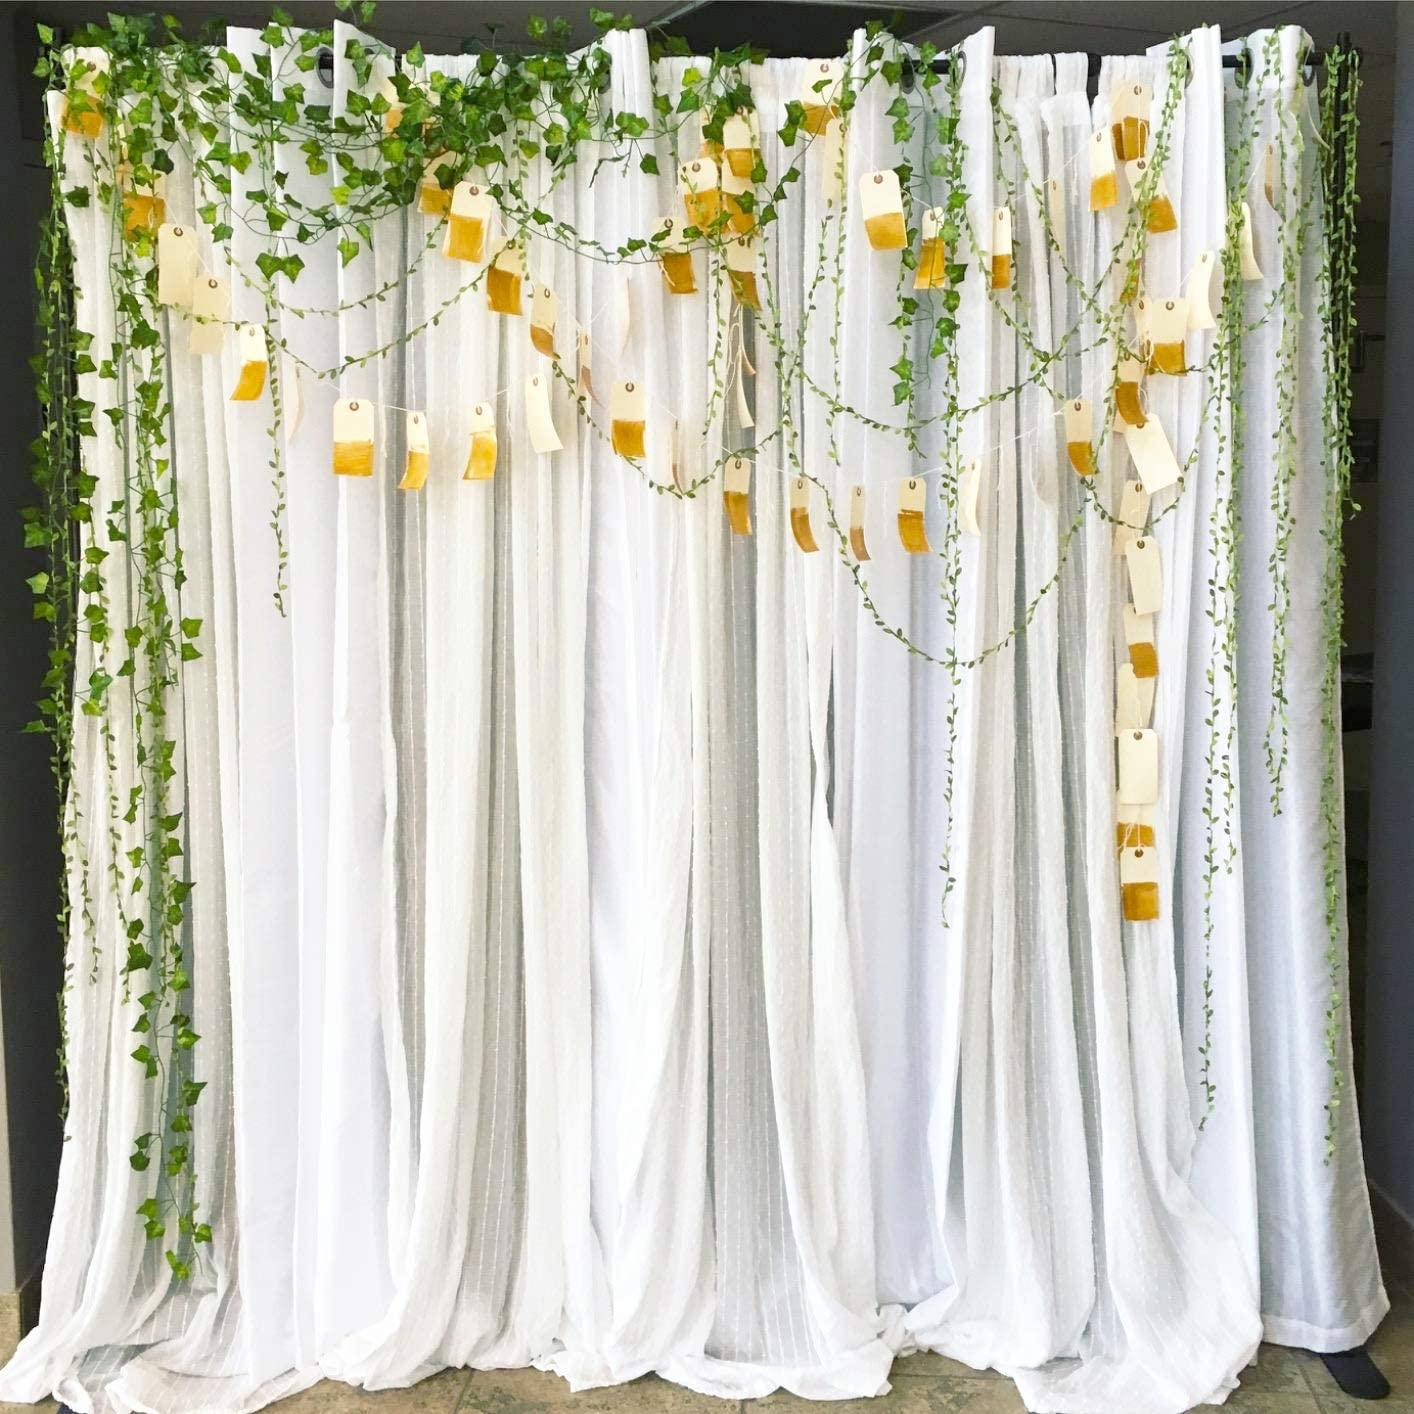 265 Feet Artificial Leaf Garlands Fake Hanging Plants Fake Foliage Garland DIY for Wreath Party Wedding Wall Crafts Decor - Lasercutwraps Shop